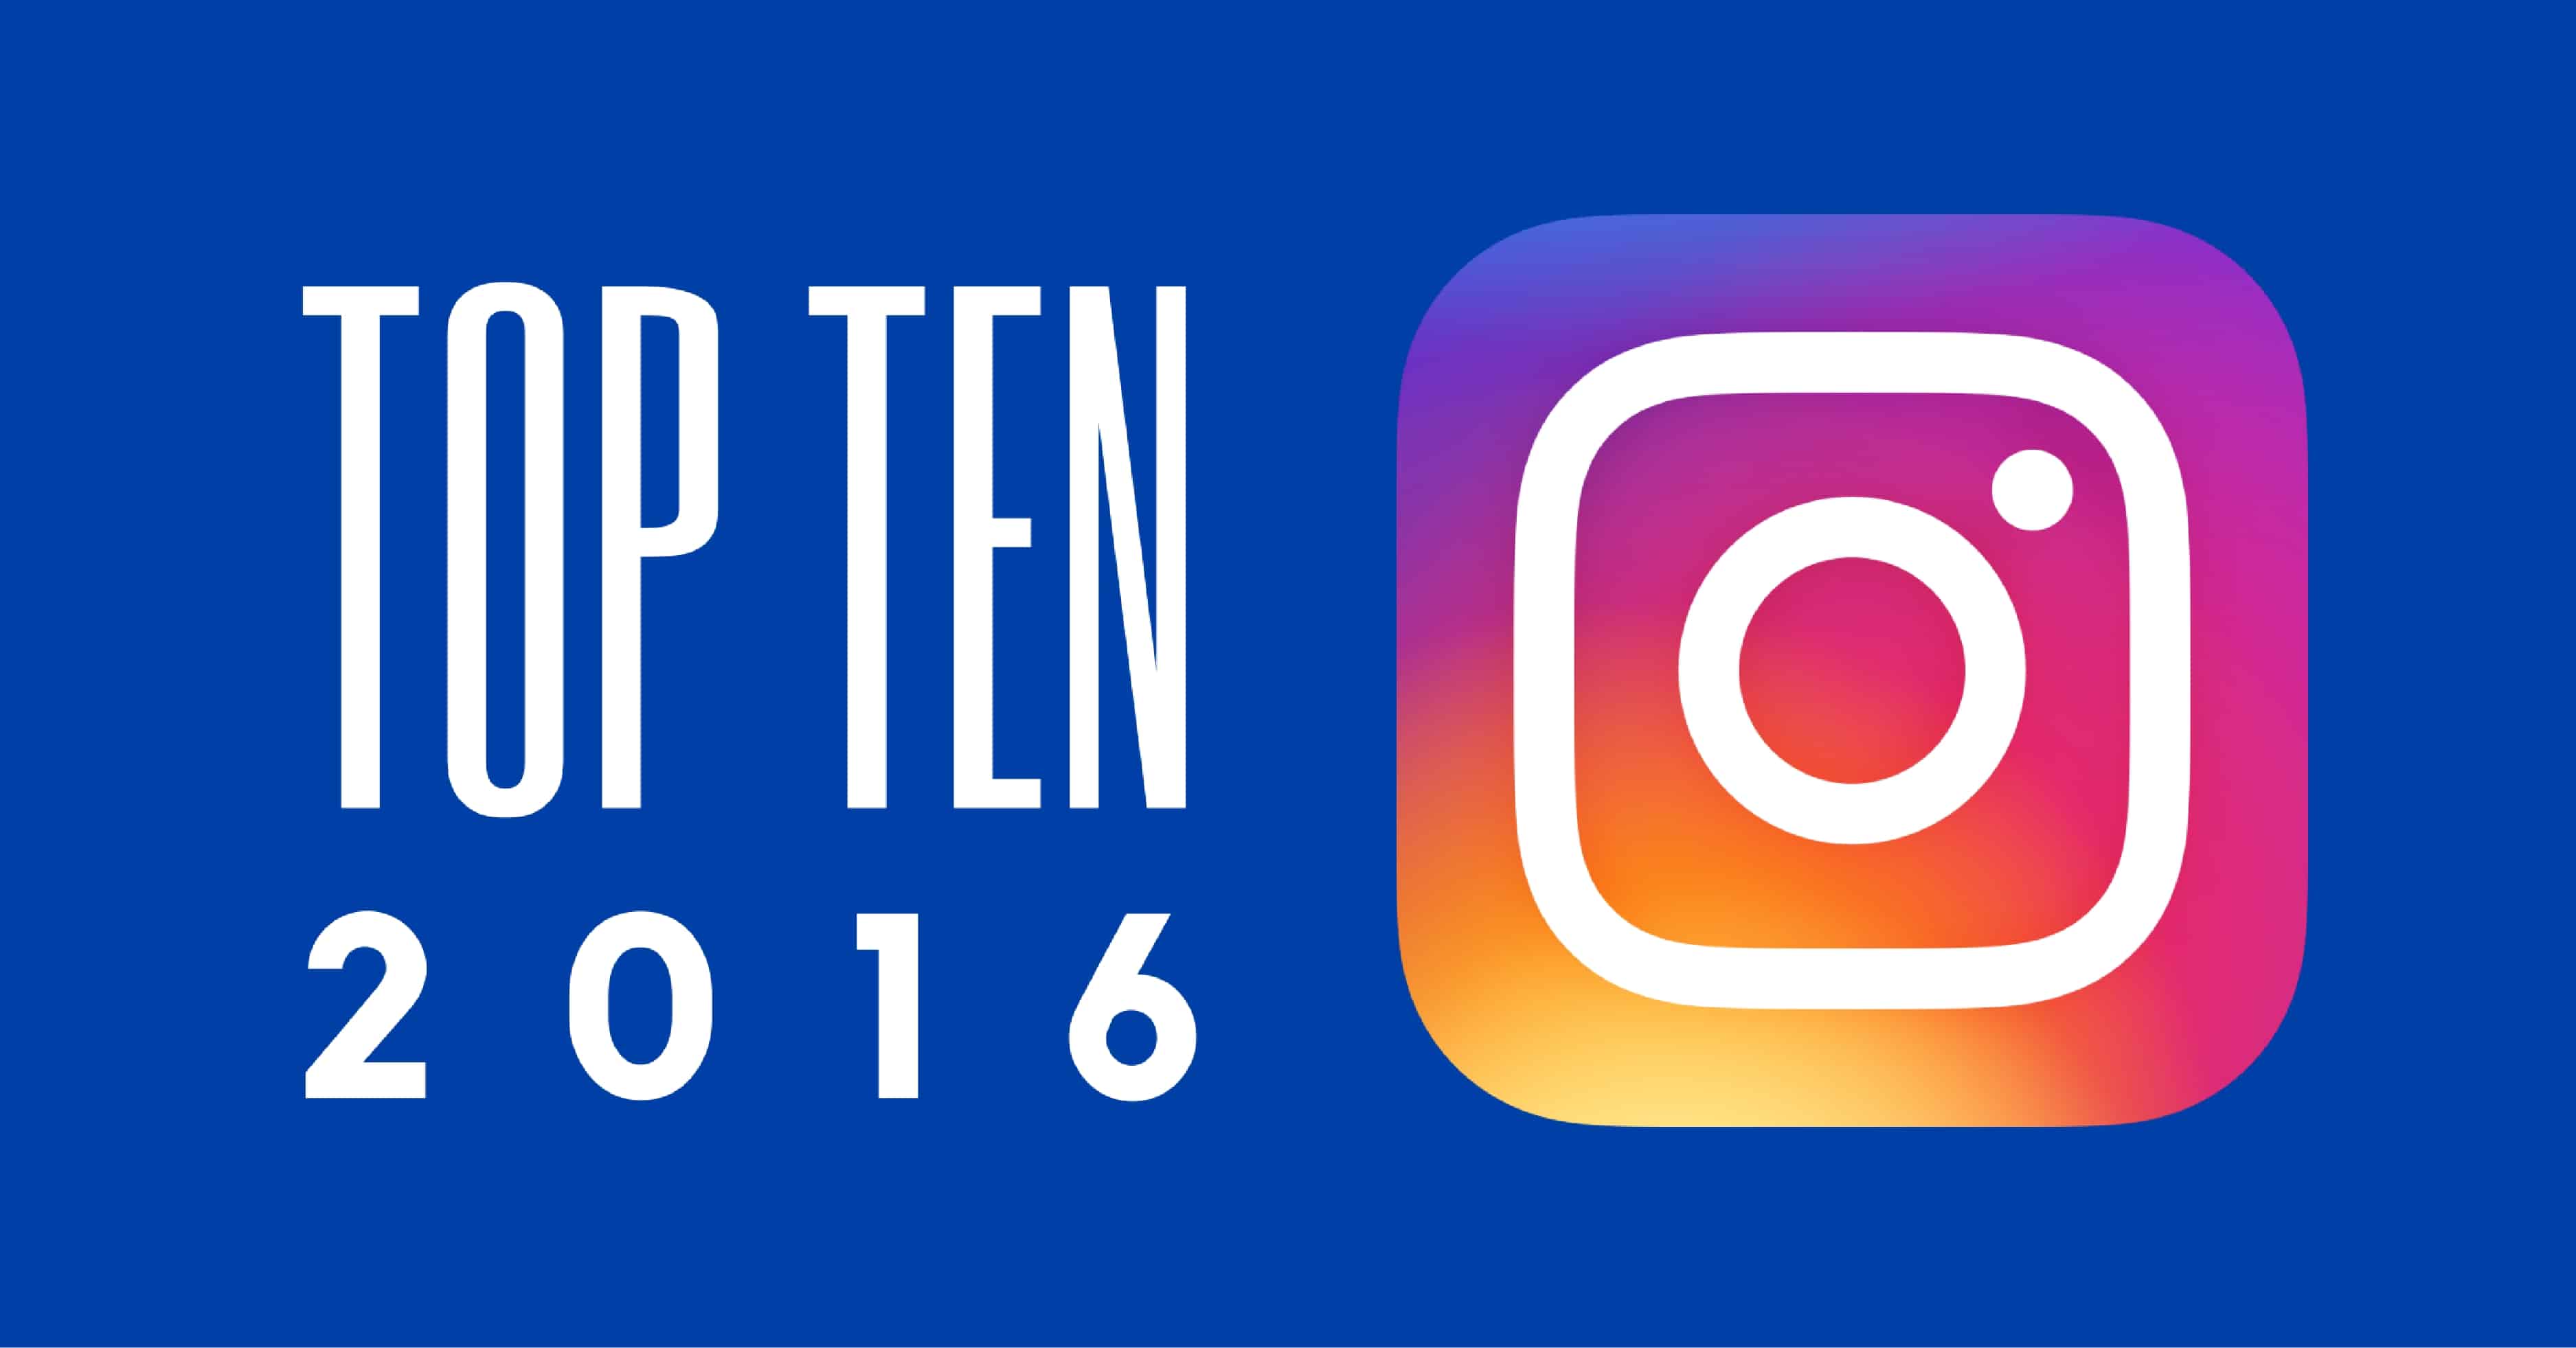 Top 10 Instagram Posts of 2016